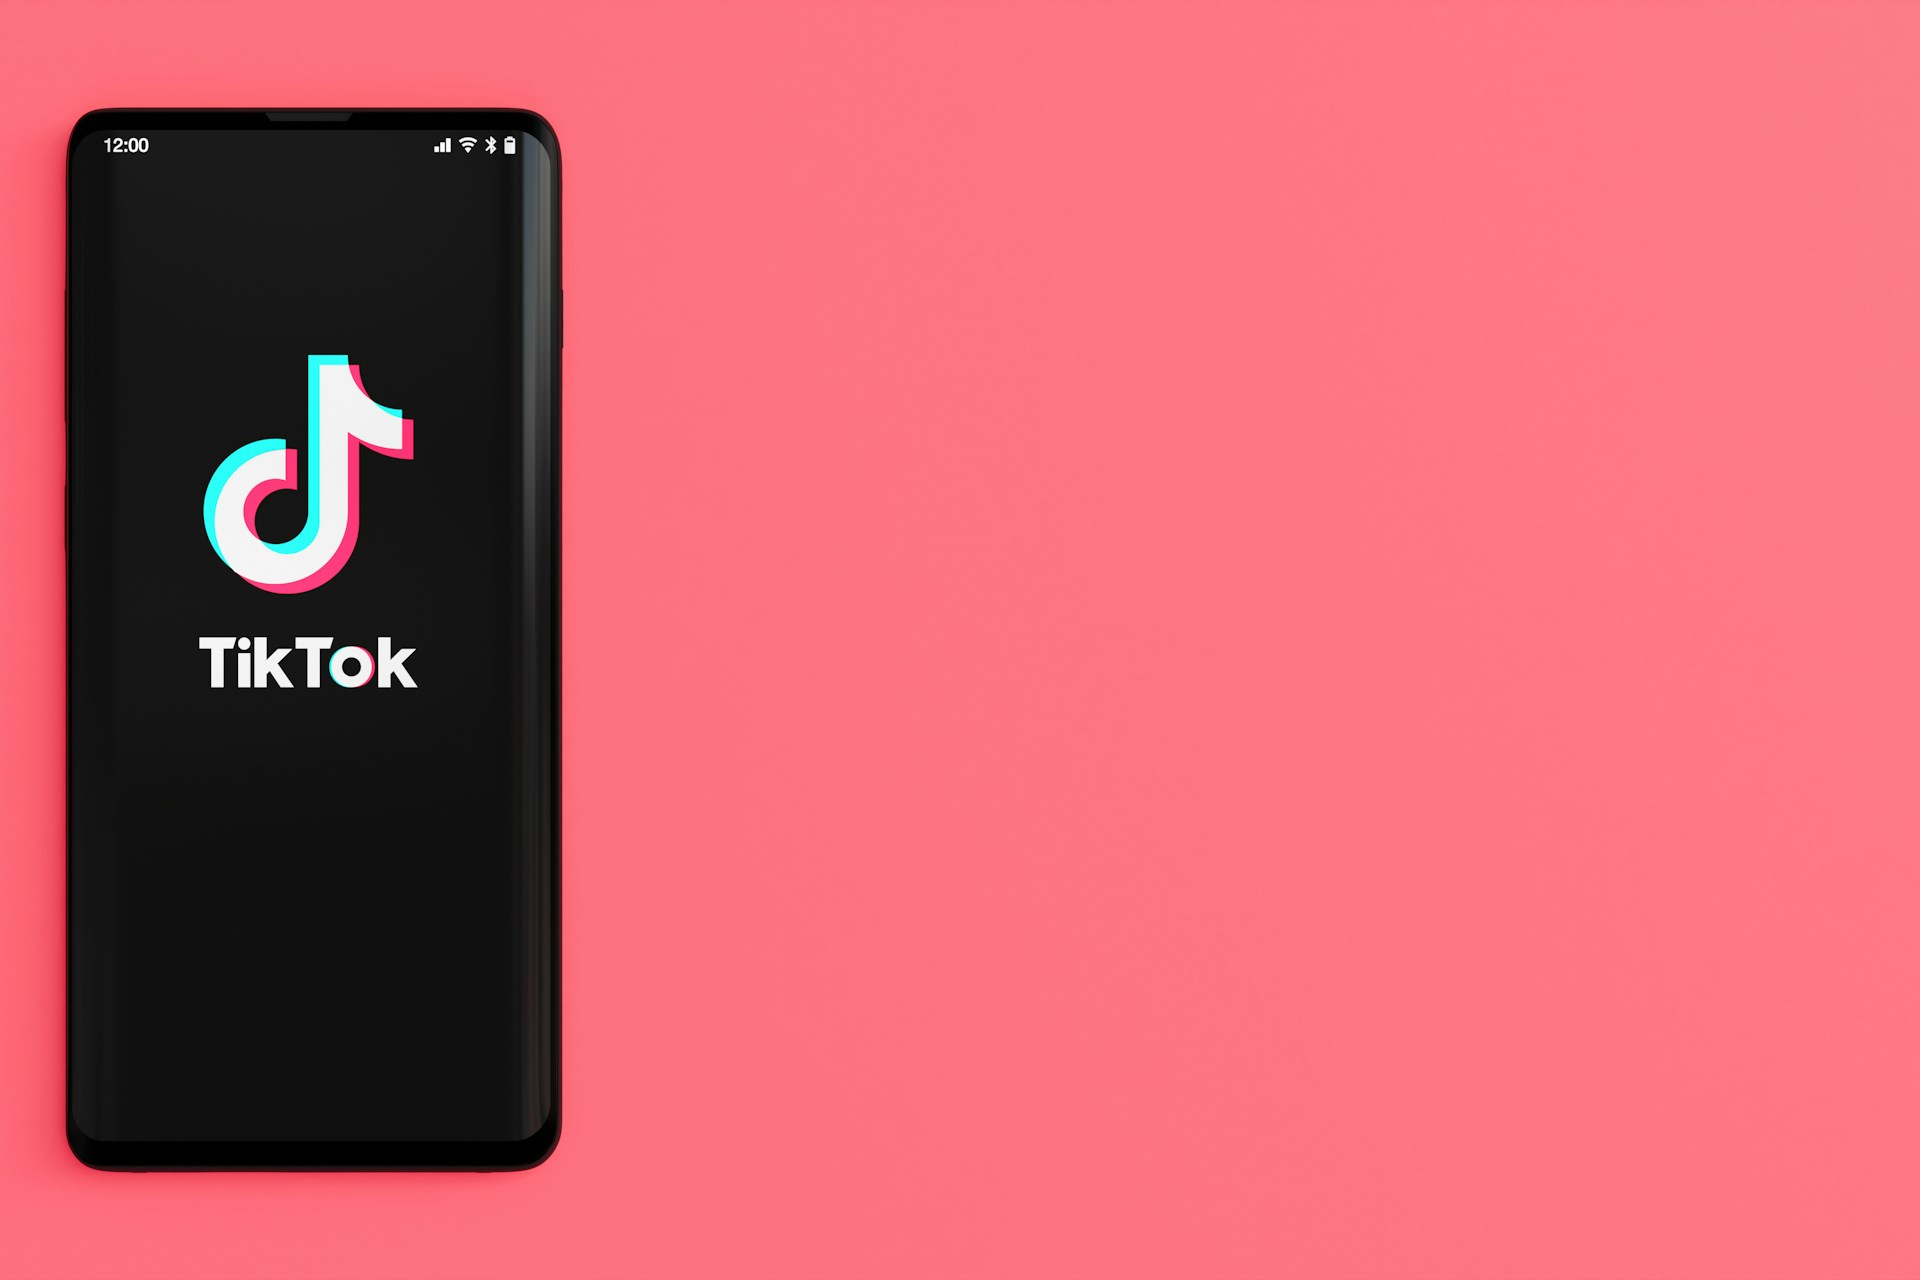 ピンクの背景にTIkTokロゴが表示されているスマートフォンが配置されている画像